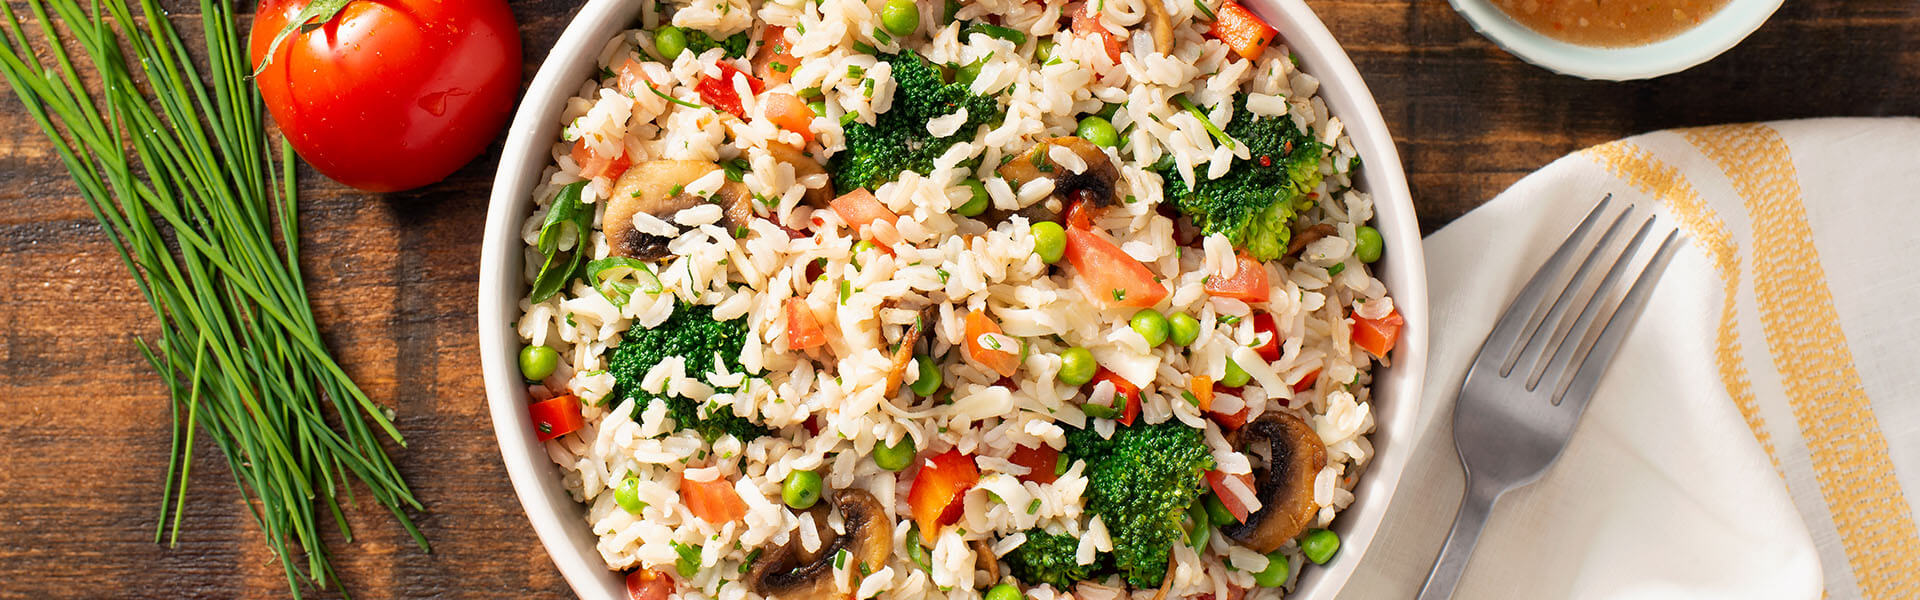 Ensalada mediterránea con arroz y verduras